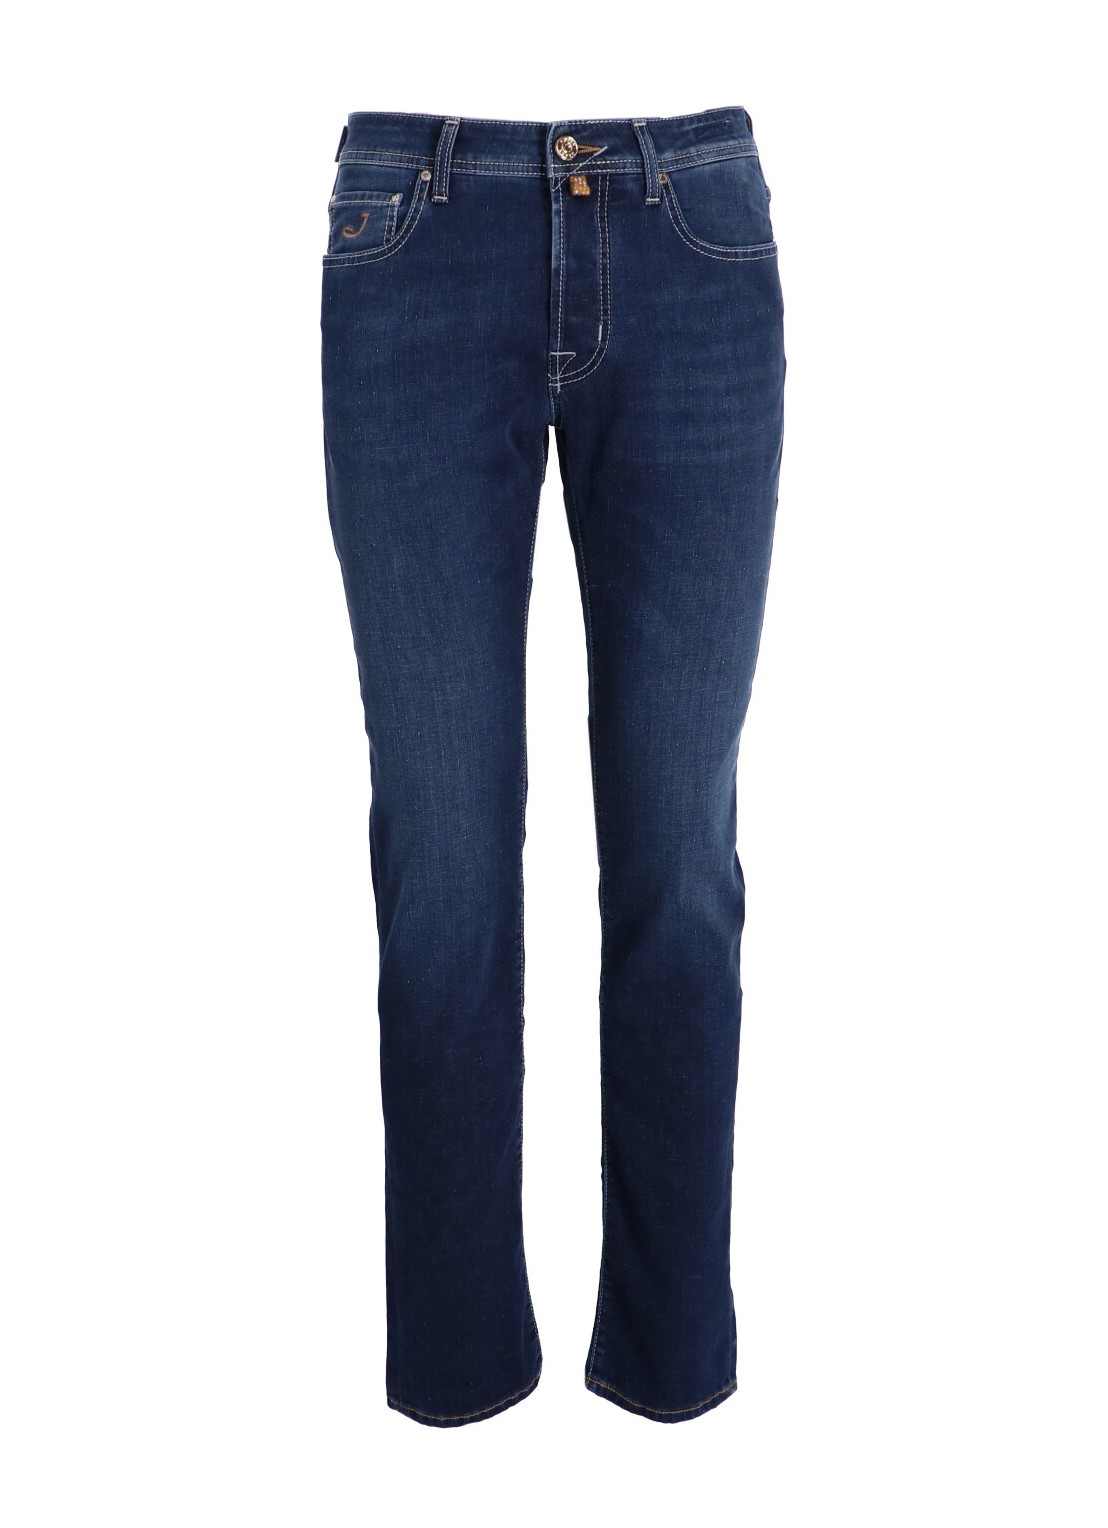 Pantalon jeans jacob cohen denim manpant 5 pkt slim fit bard - uqm0440s4130 680d talla 38
 